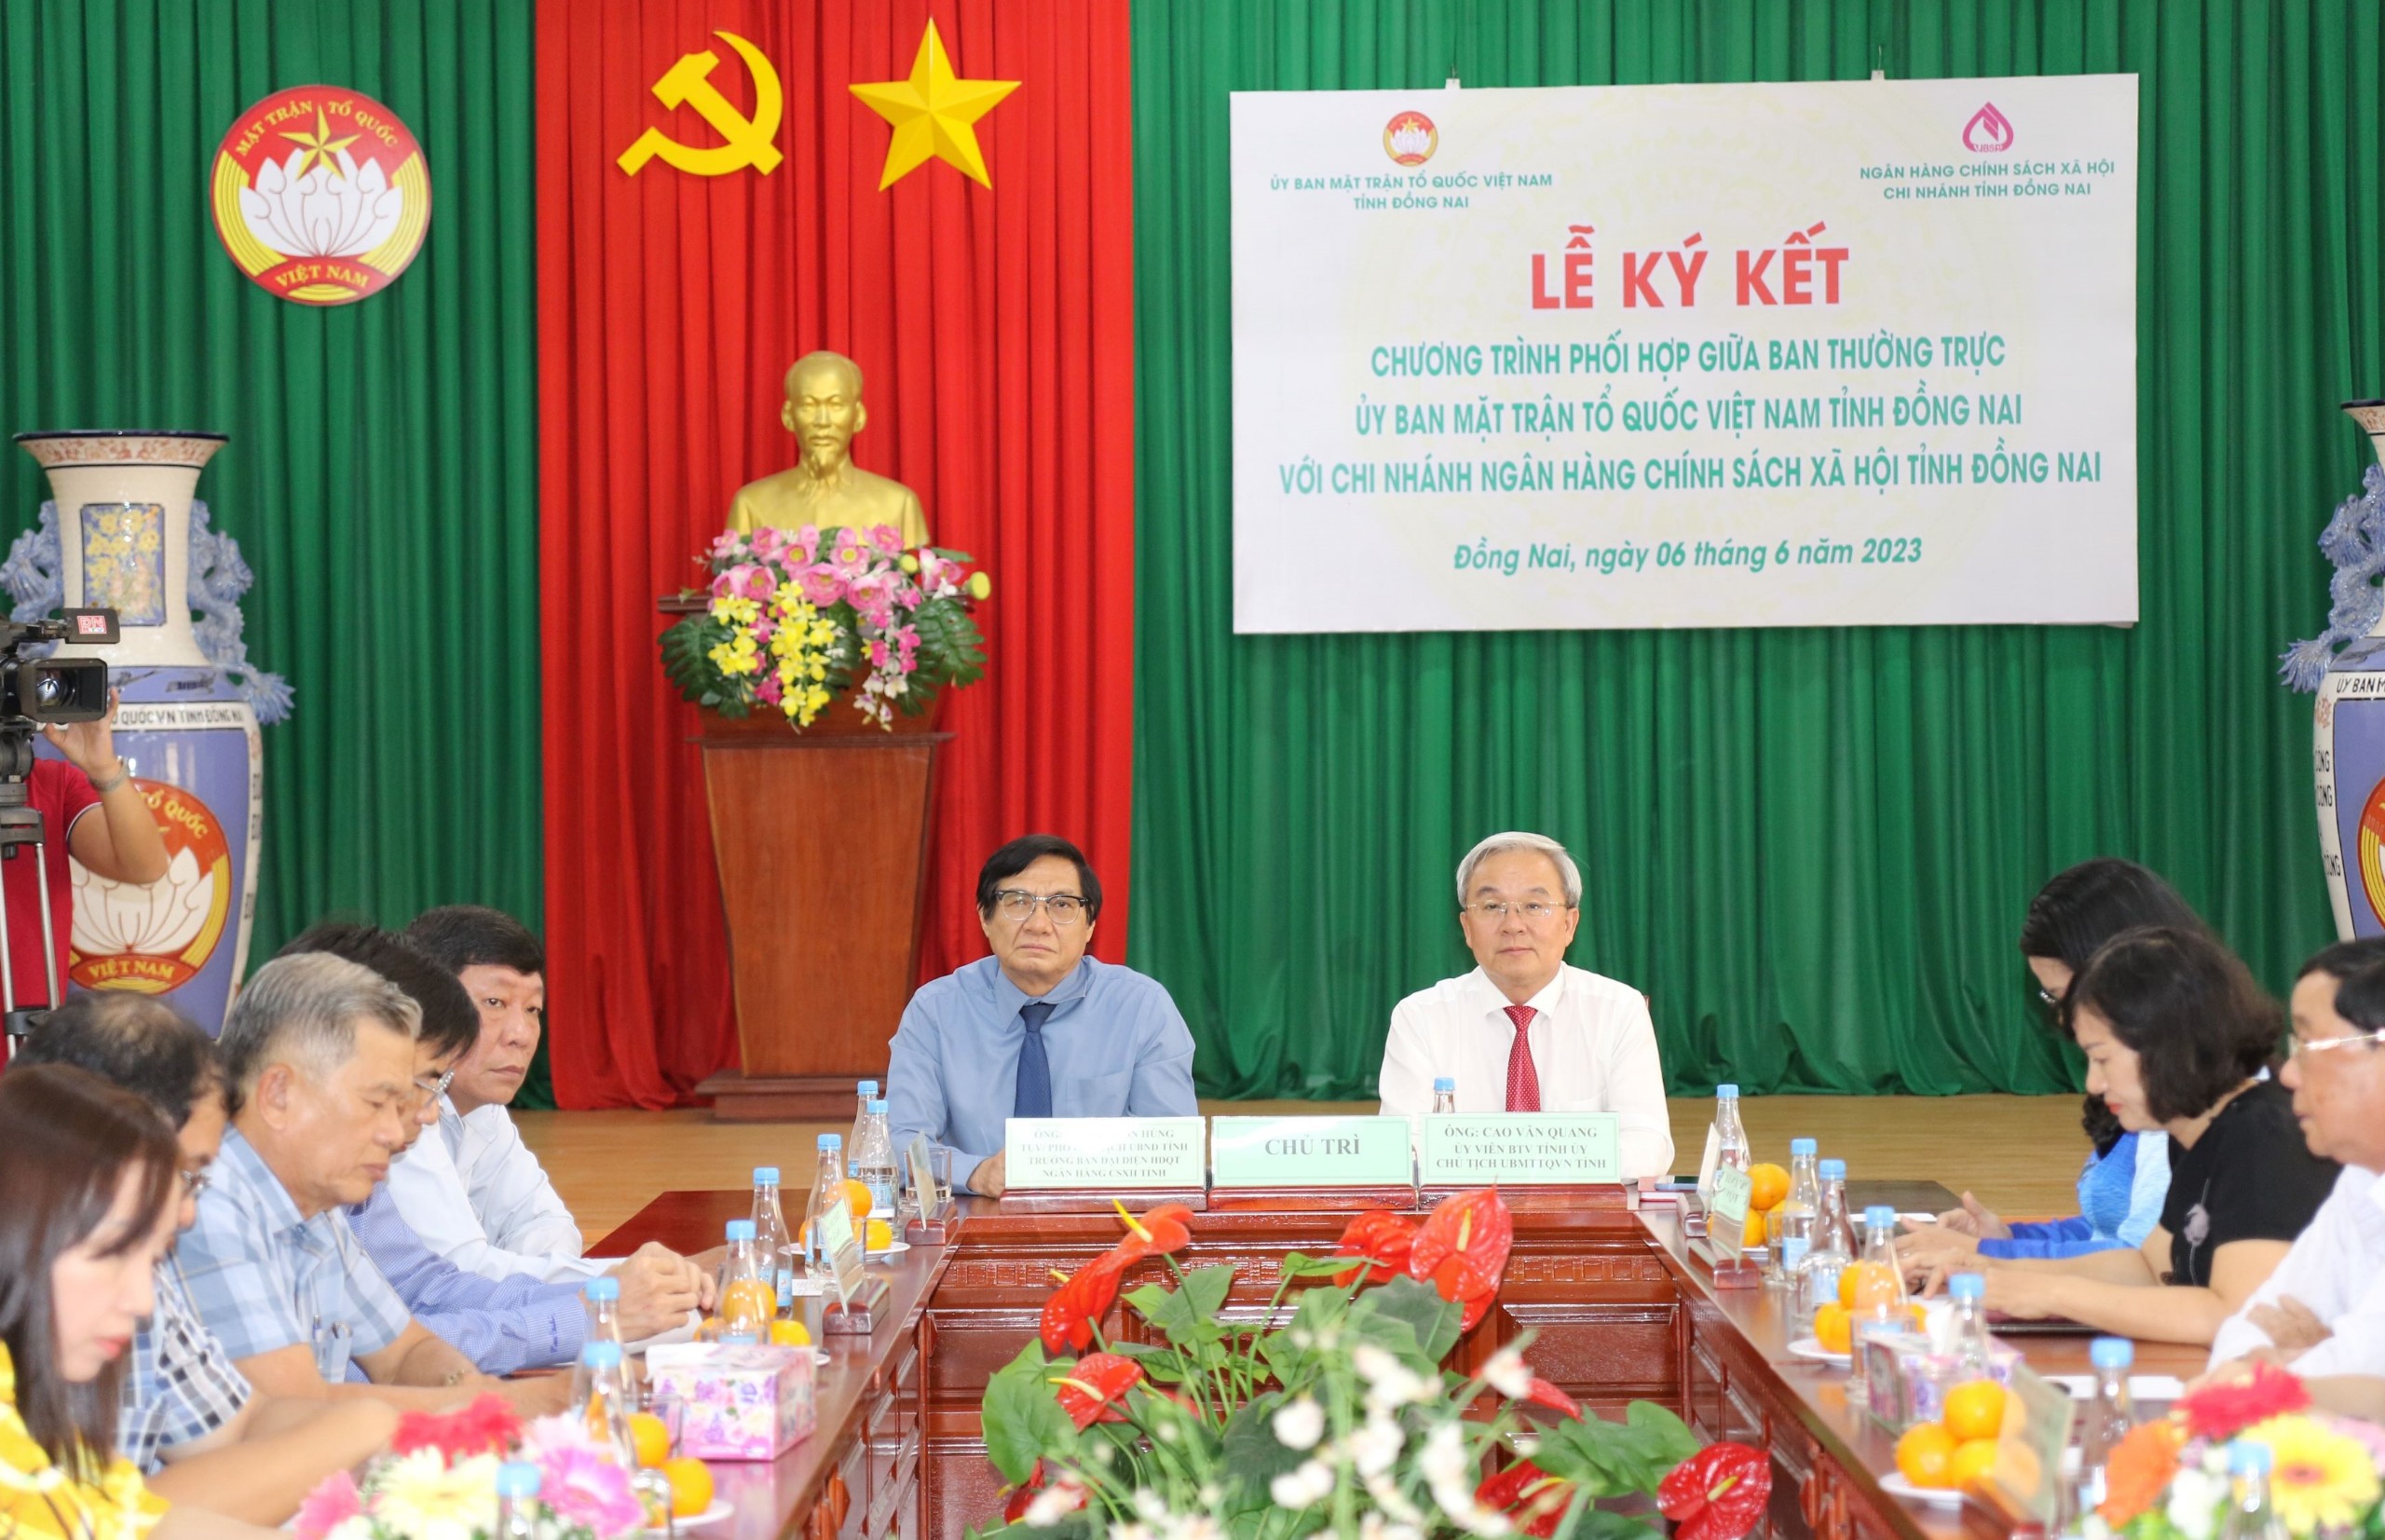 Ký kết Chương trình phối hợp giữa Ủy ban MTTQ Việt Nam tỉnh và Chi nhánh Ngân hàng Chính sách xã hội...